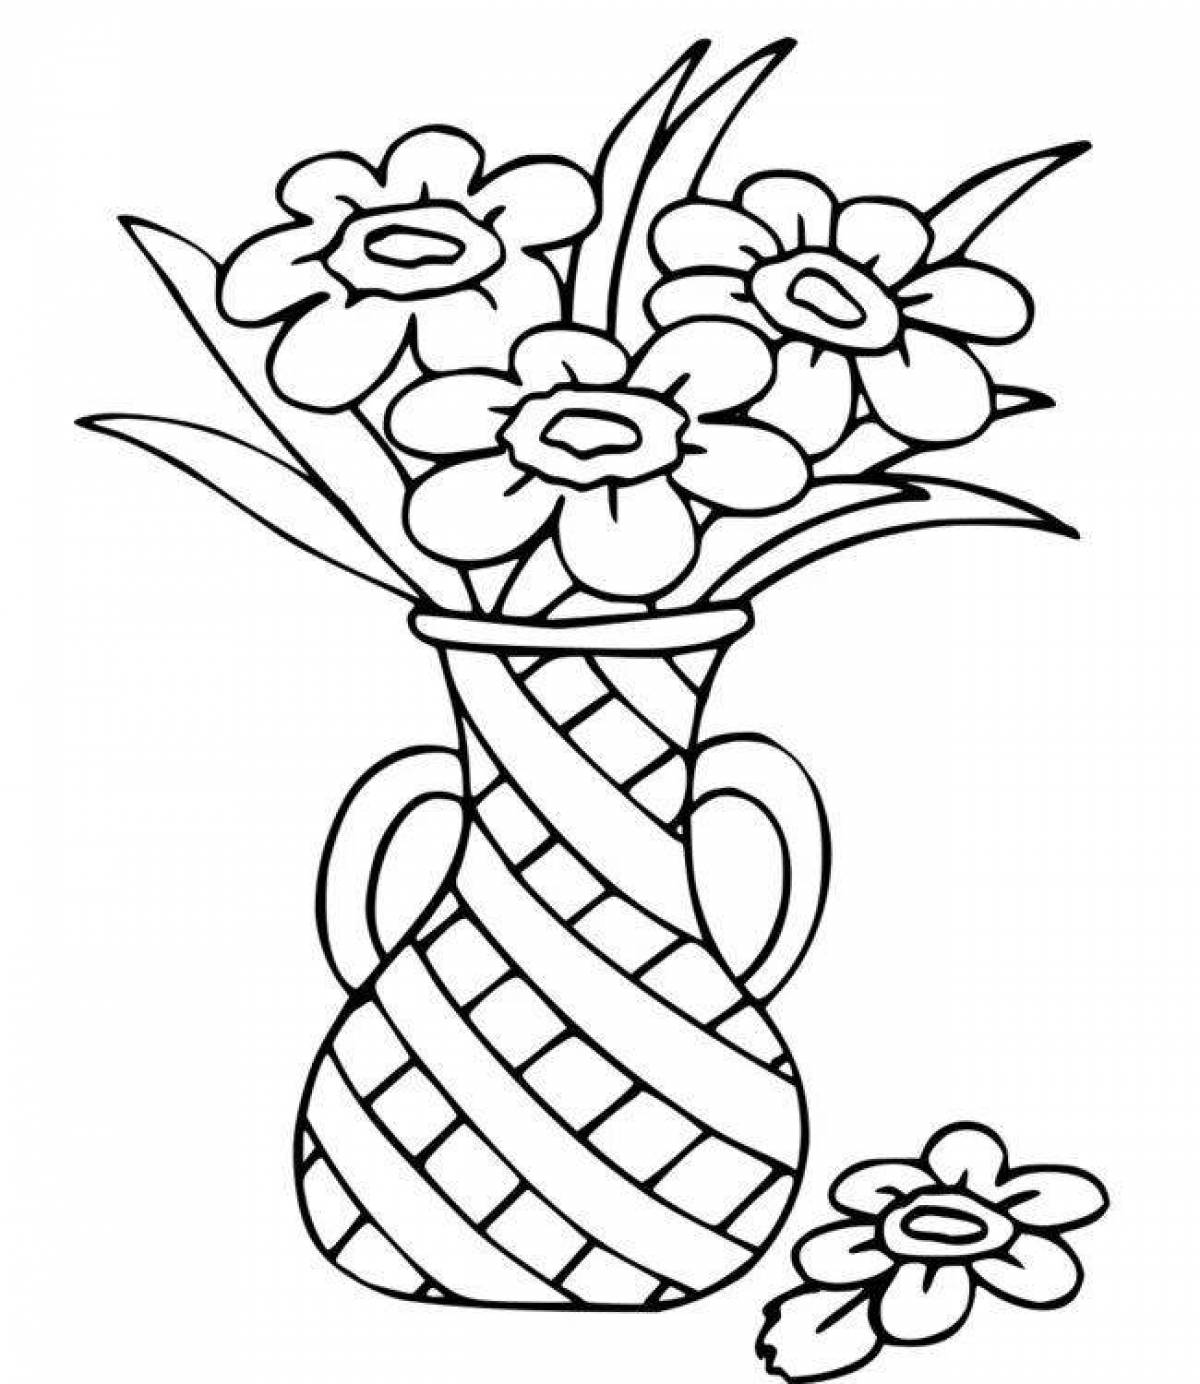 Великолепно раскрашенная ваза с цветами раскраска